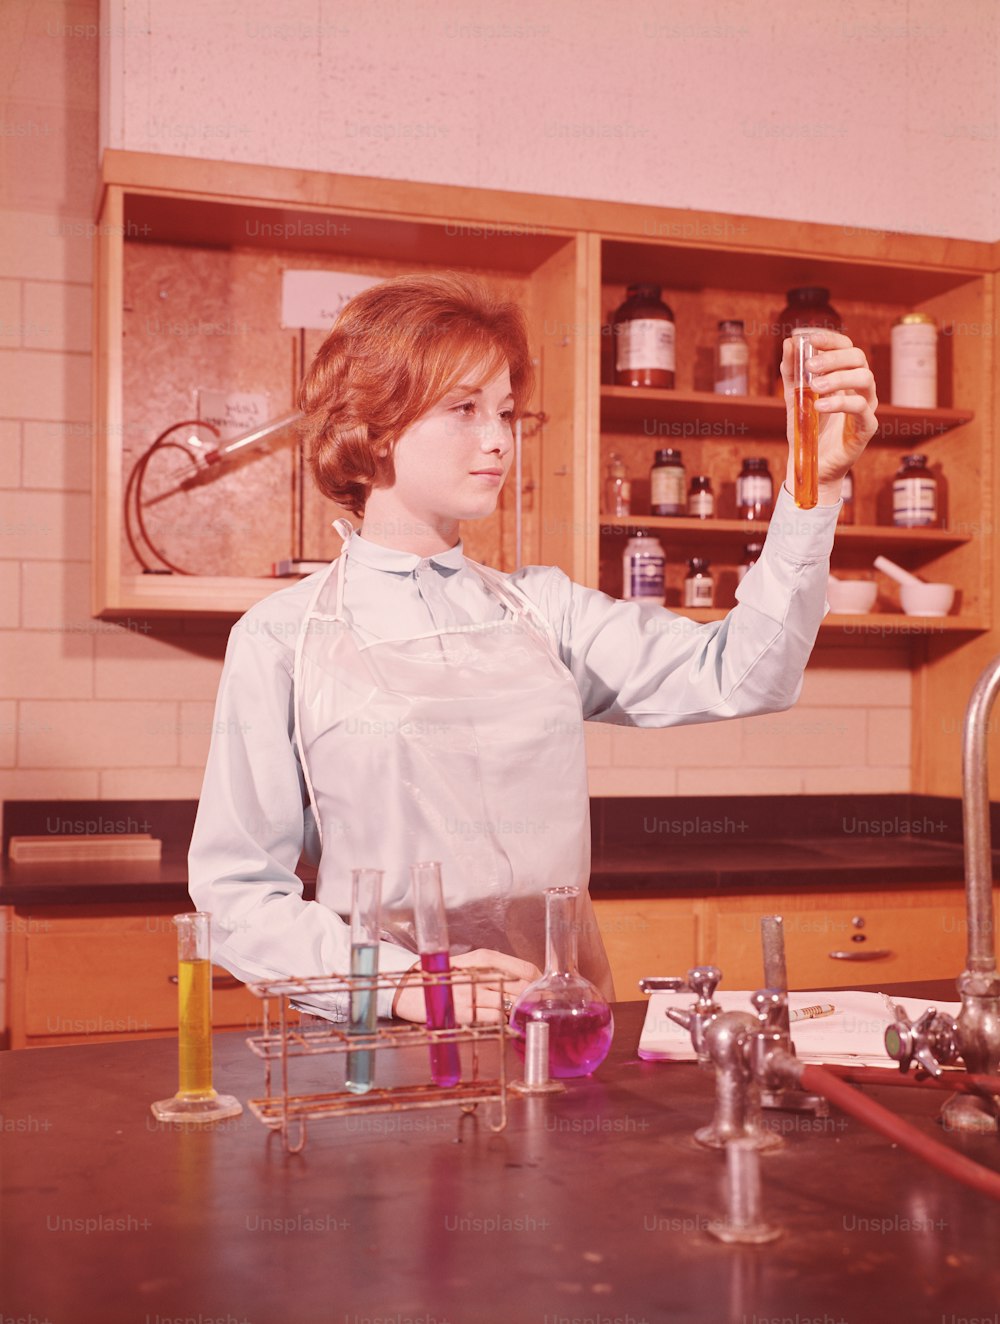 STATI UNITI - 1960 CIRCA: Studentessa adolescente che rintana una provetta in un laboratorio di chimica.